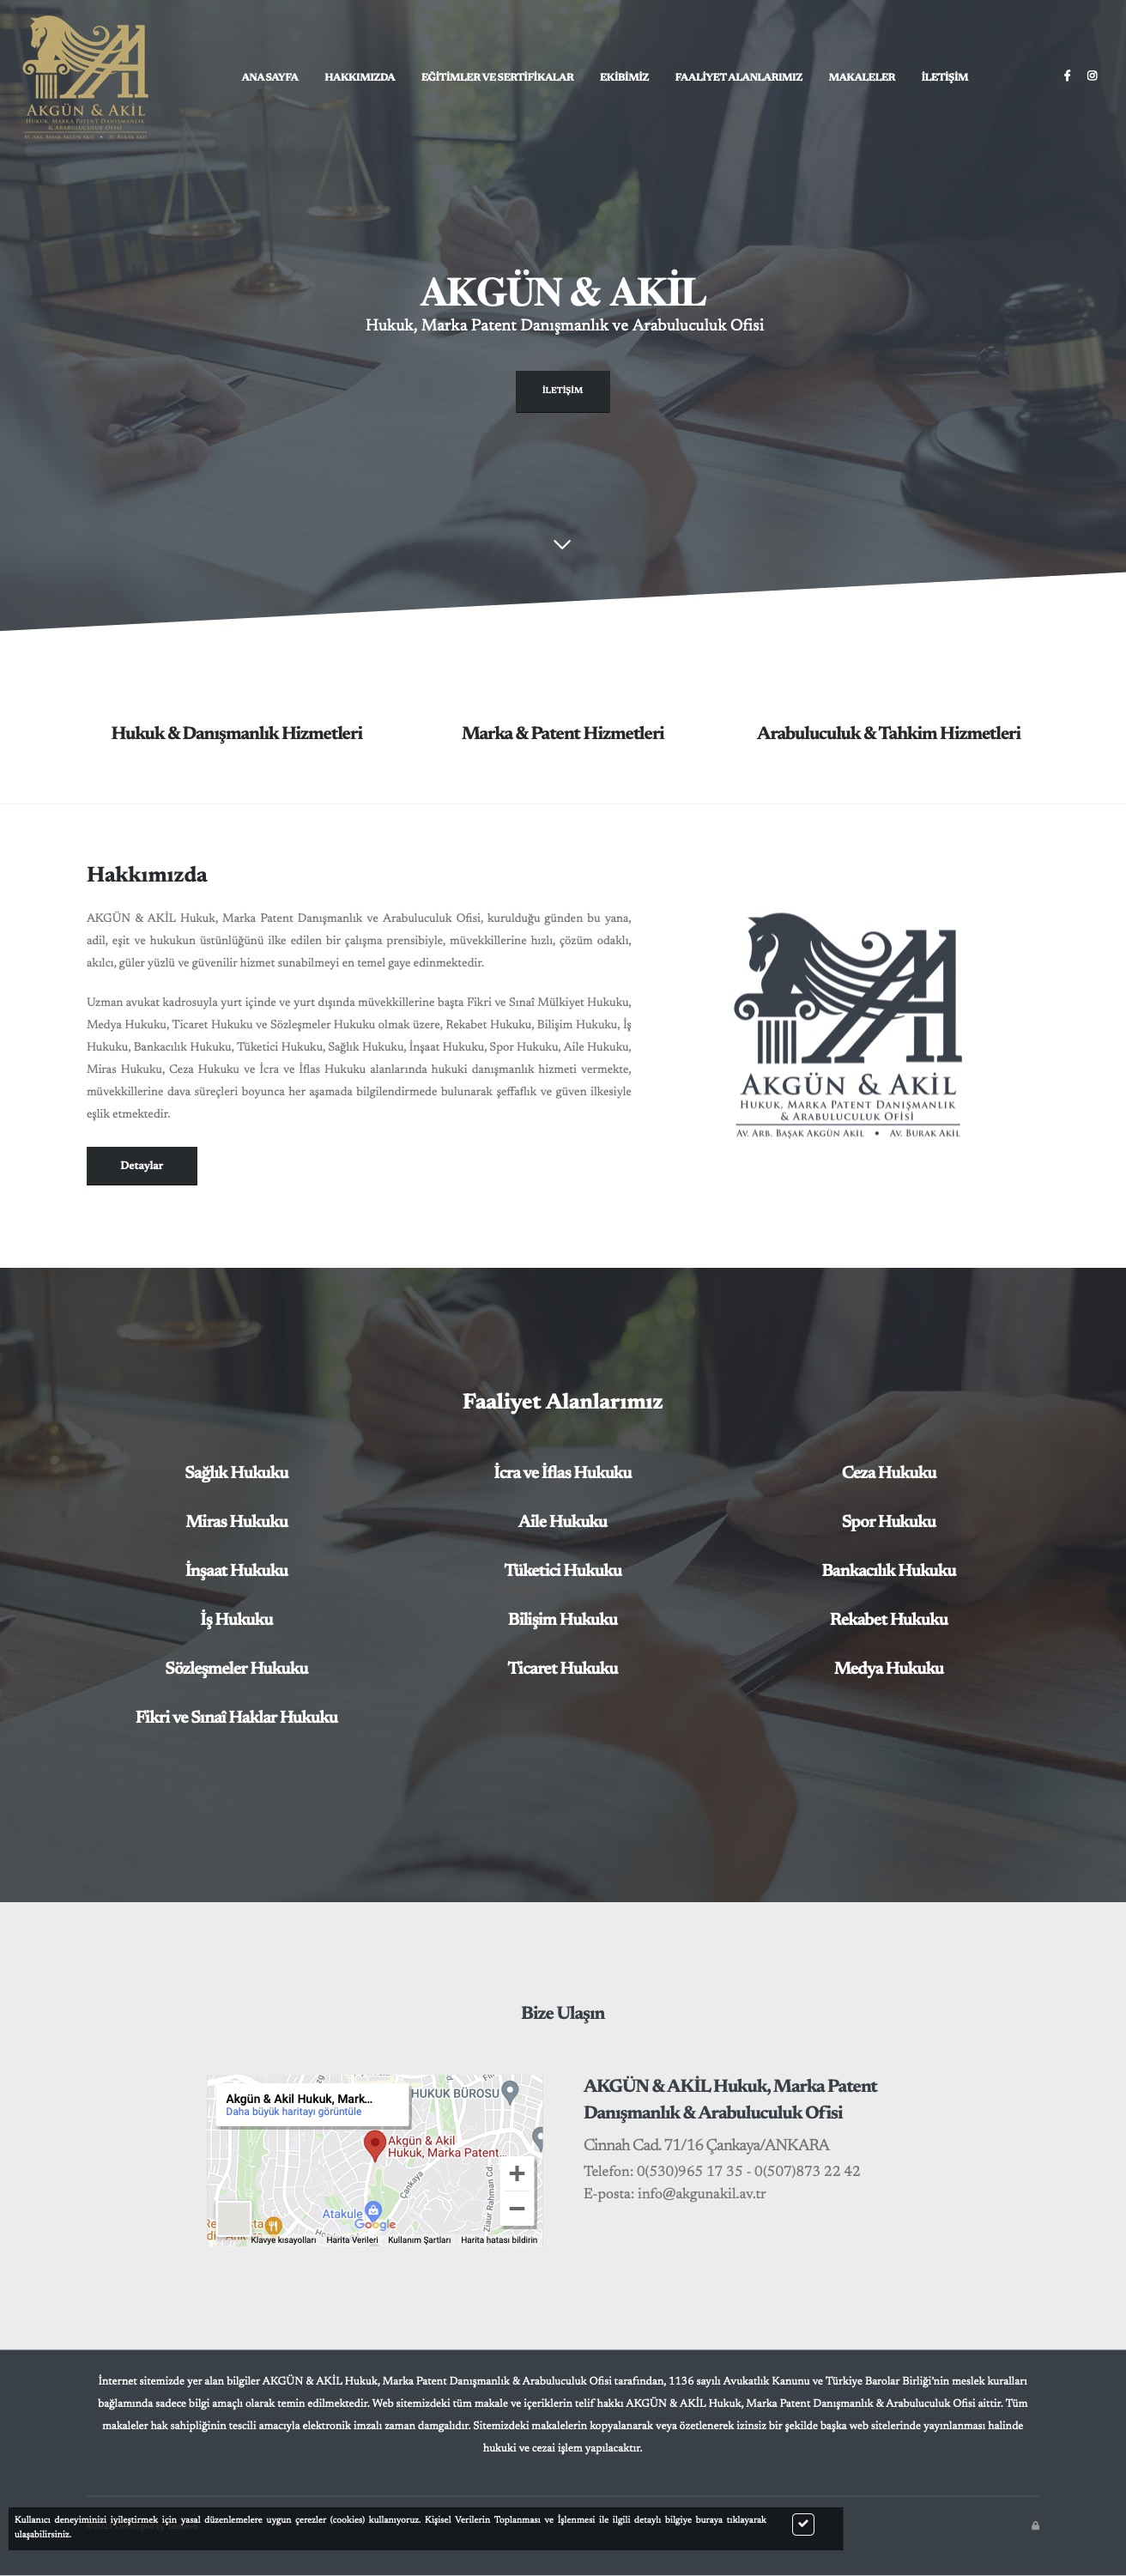 AKGÜN & AKİL Hukuk, Marka Patent Danışmanlık & Arabuluculuk Ofisi - Web Sitesi Tasarımı ve İçerik Yönetim Sistemi